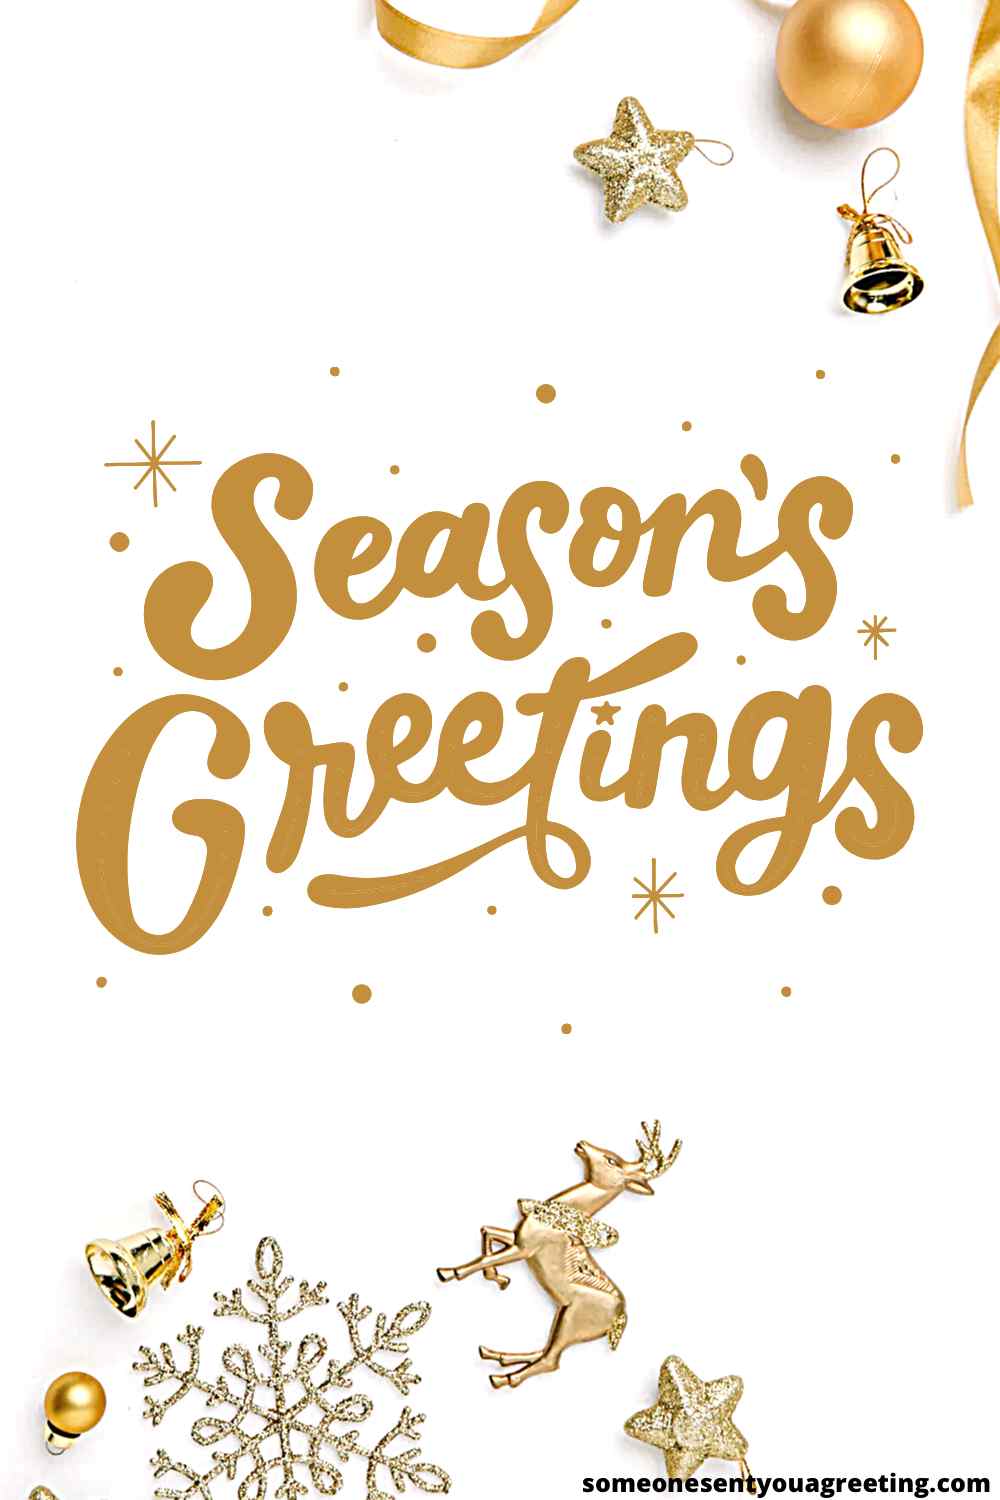 Seasons Greetings Message 